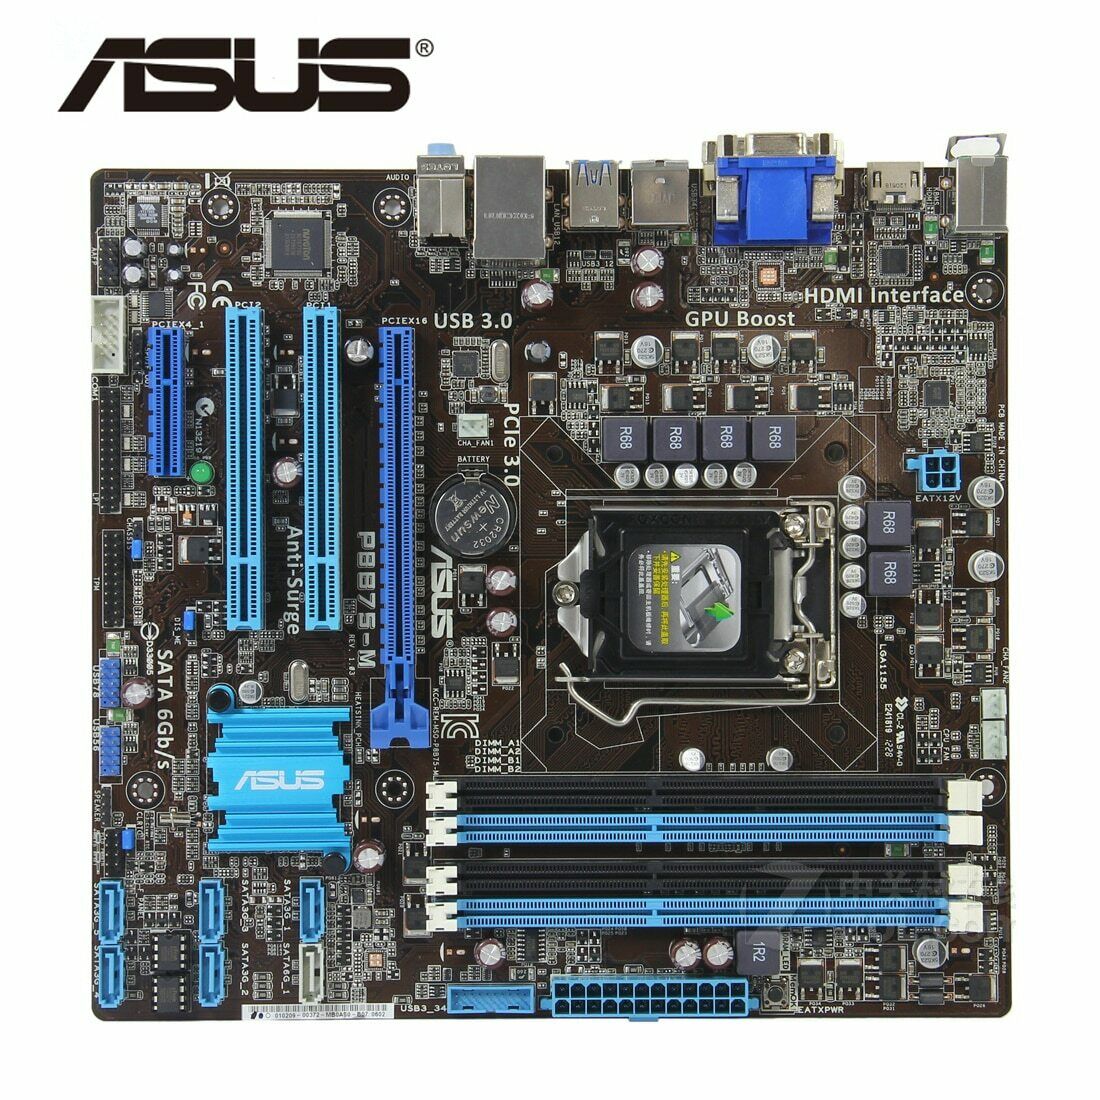 ASUS Intel B75 Motherboard P8B75-M Socket LGA 1155 DDR3 USB 3.0 HDMI DVI-D ATX